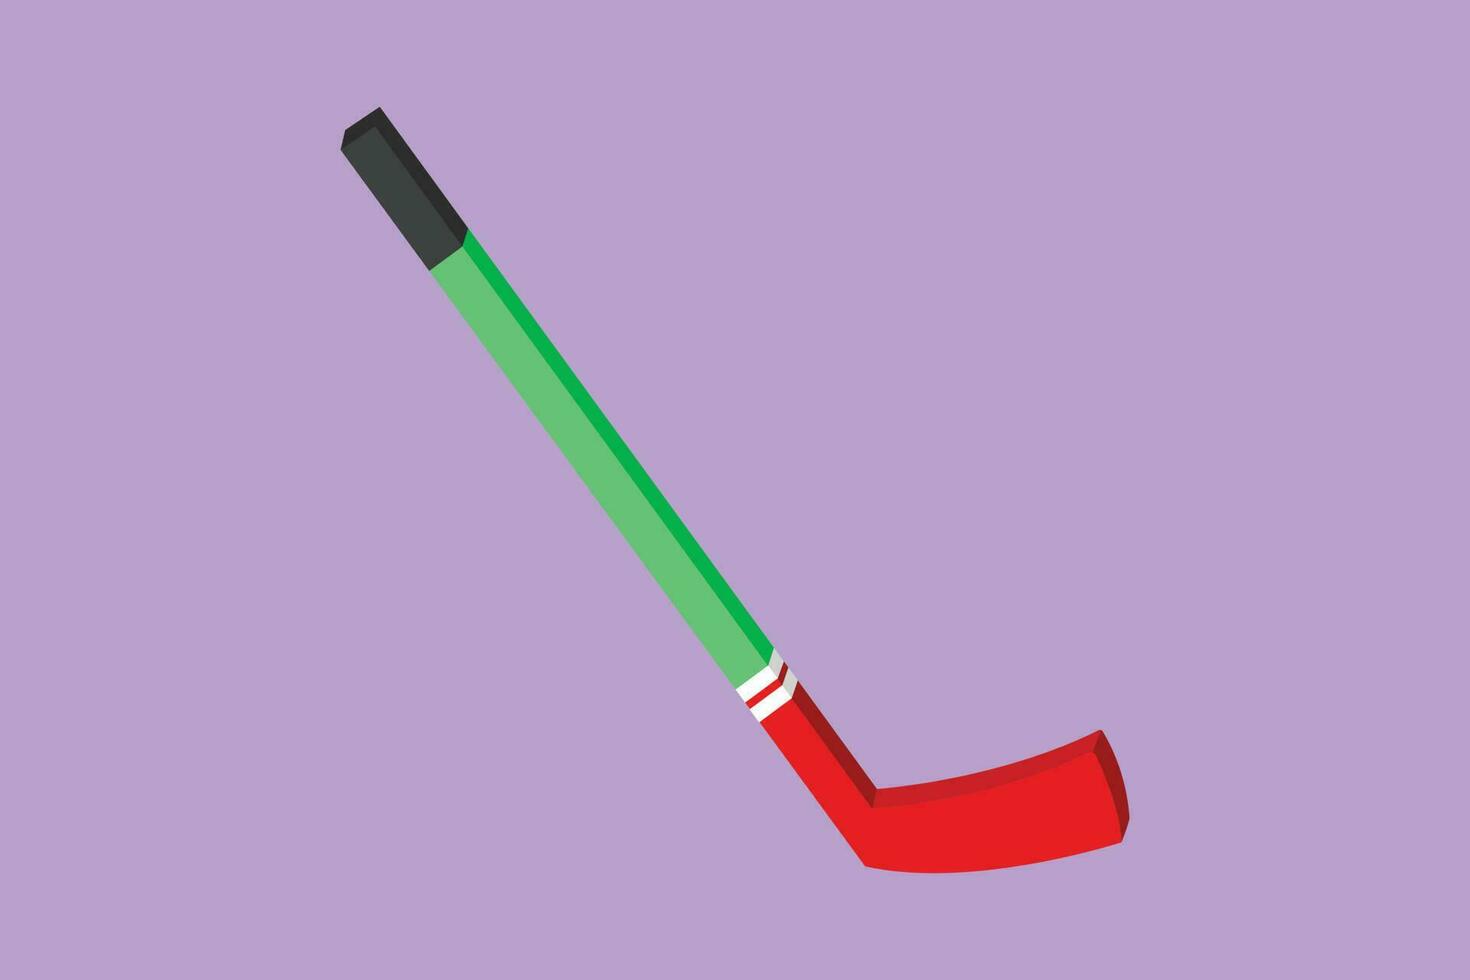 karakter vlak tekening ijs hockey stok logo of symbool. hockey puck stok, binnen- ijs sport, spel apparatuur, doel of wedstrijd, vrije tijd werkzaamheid in winter seizoen. tekenfilm ontwerp vector illustratie